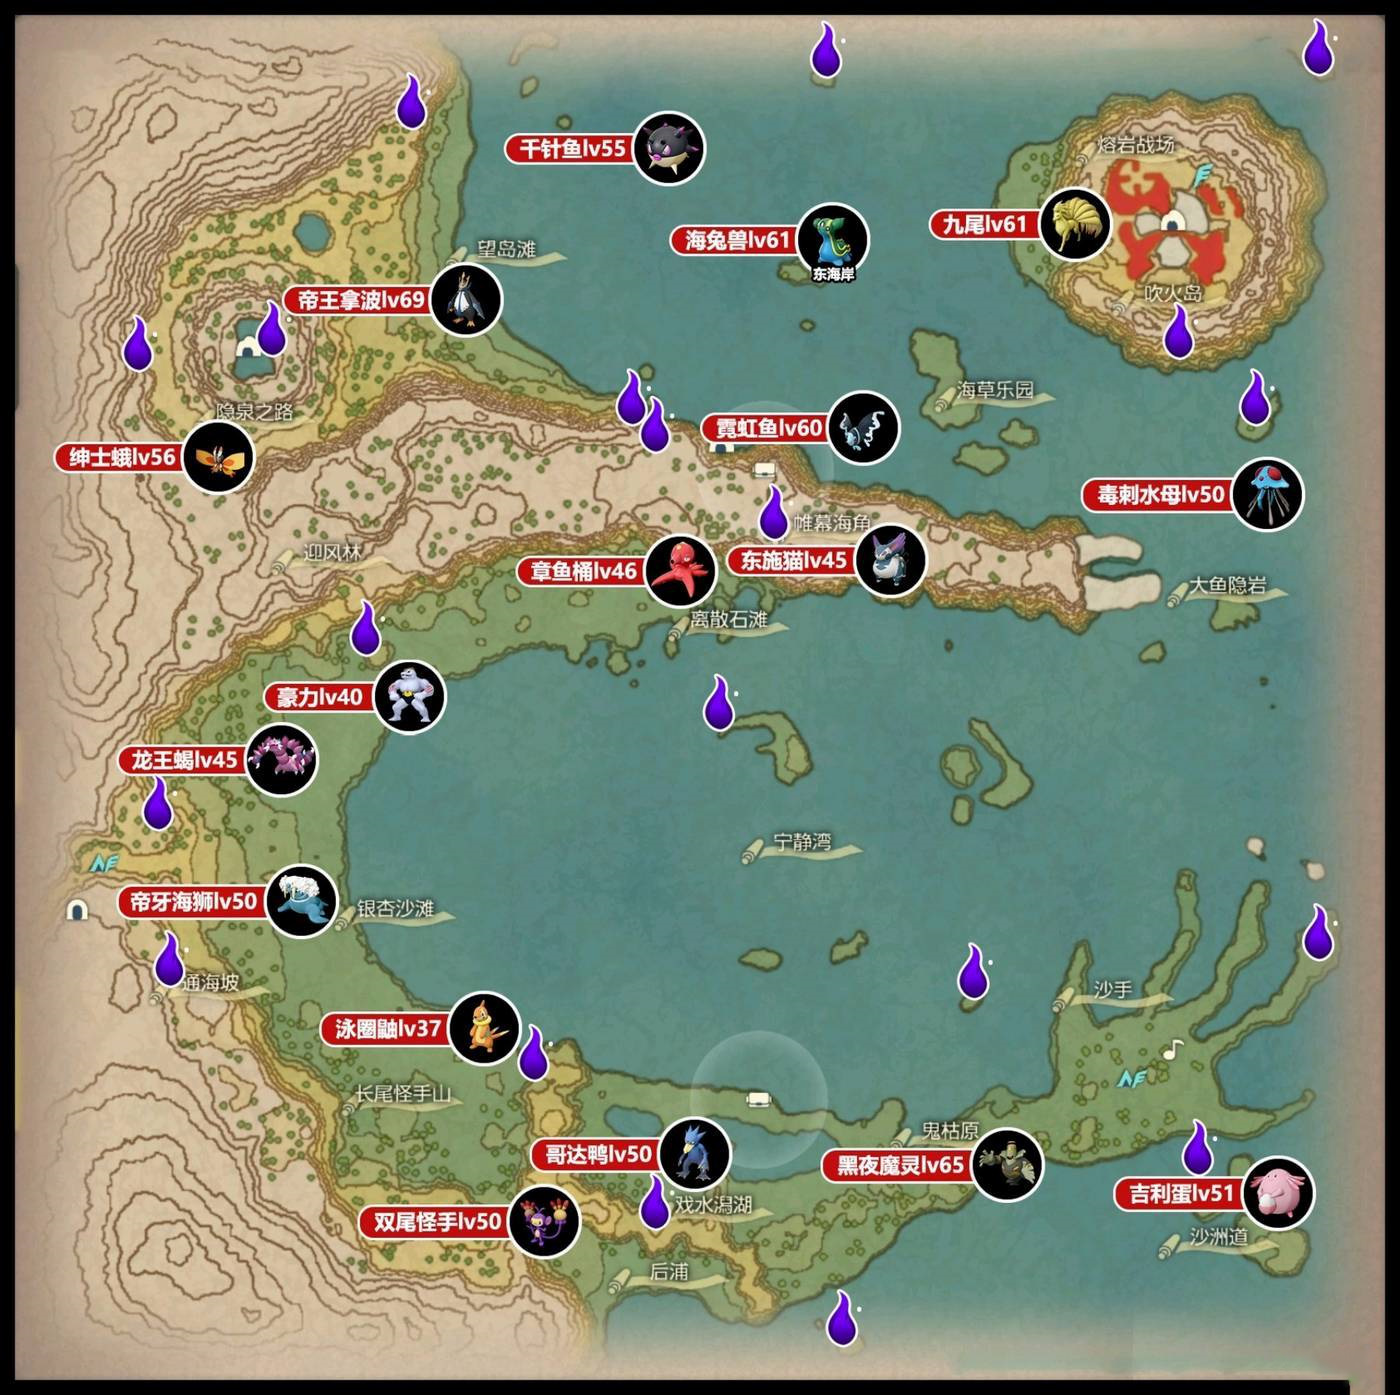 寶可夢傳說 阿爾宙斯 (Pokémon Legends Arceus) 各區域頭目與鬼火位置